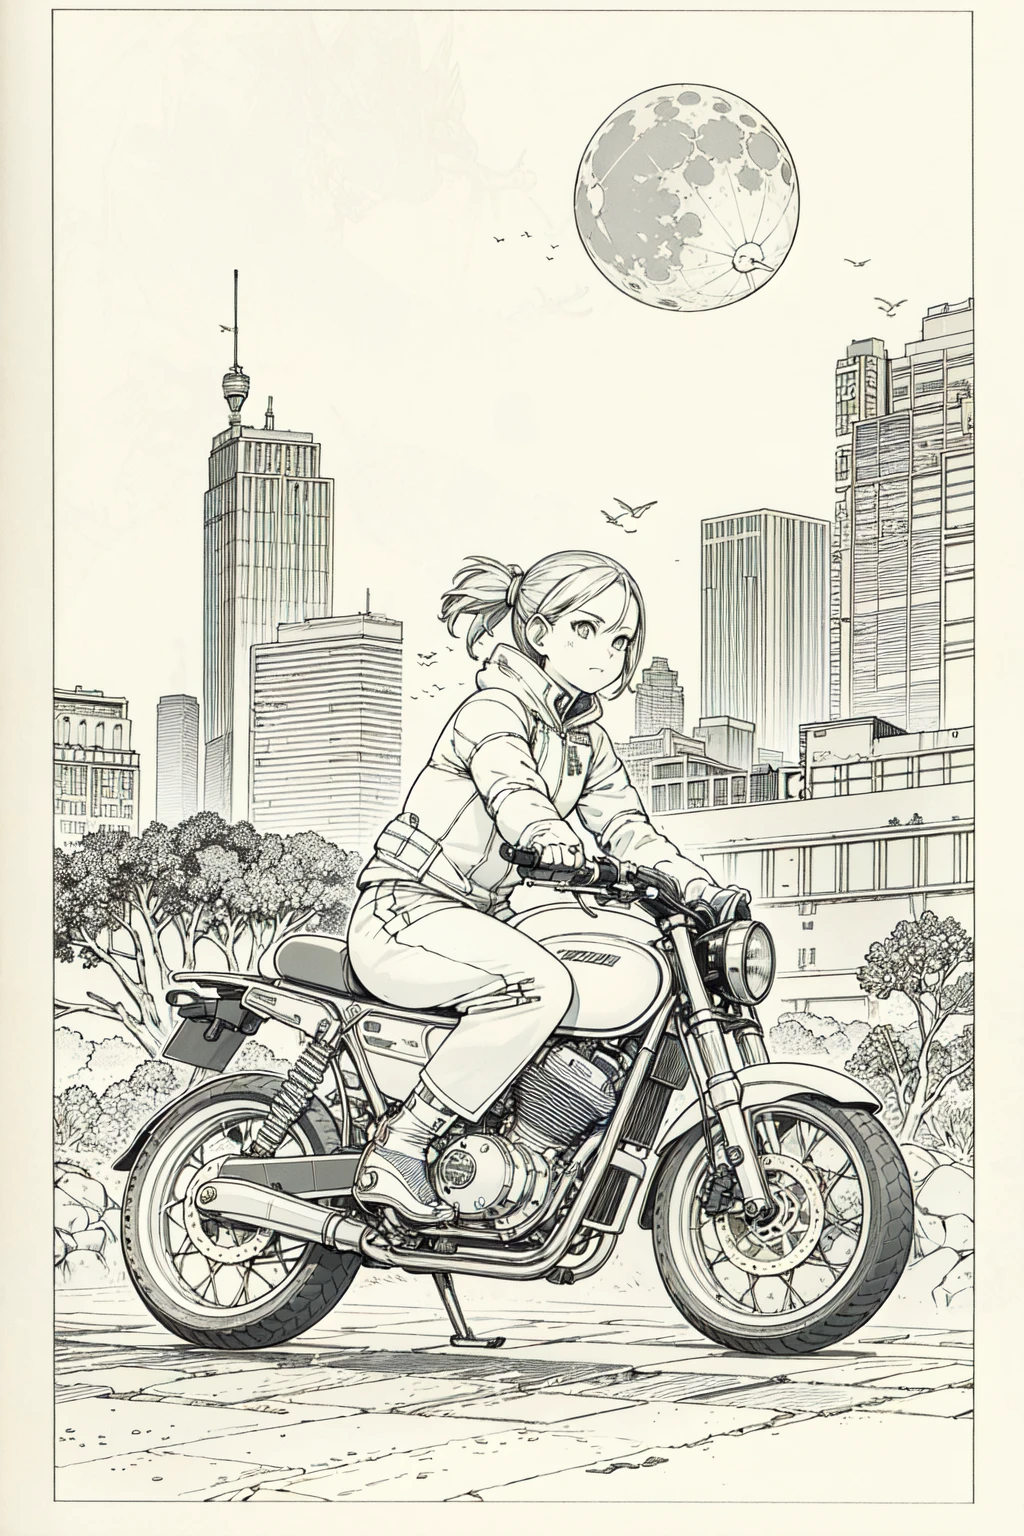 最高品質, 傑作, 写真, 4K, 写真realistic, 非常に詳細な,
バイクに乗る女の子1人, テックウェア, サイバーパンクシティ, 一人で, 未来的な, 背景の巨大な月, 白黒, 鳥山明, 閉じる,
